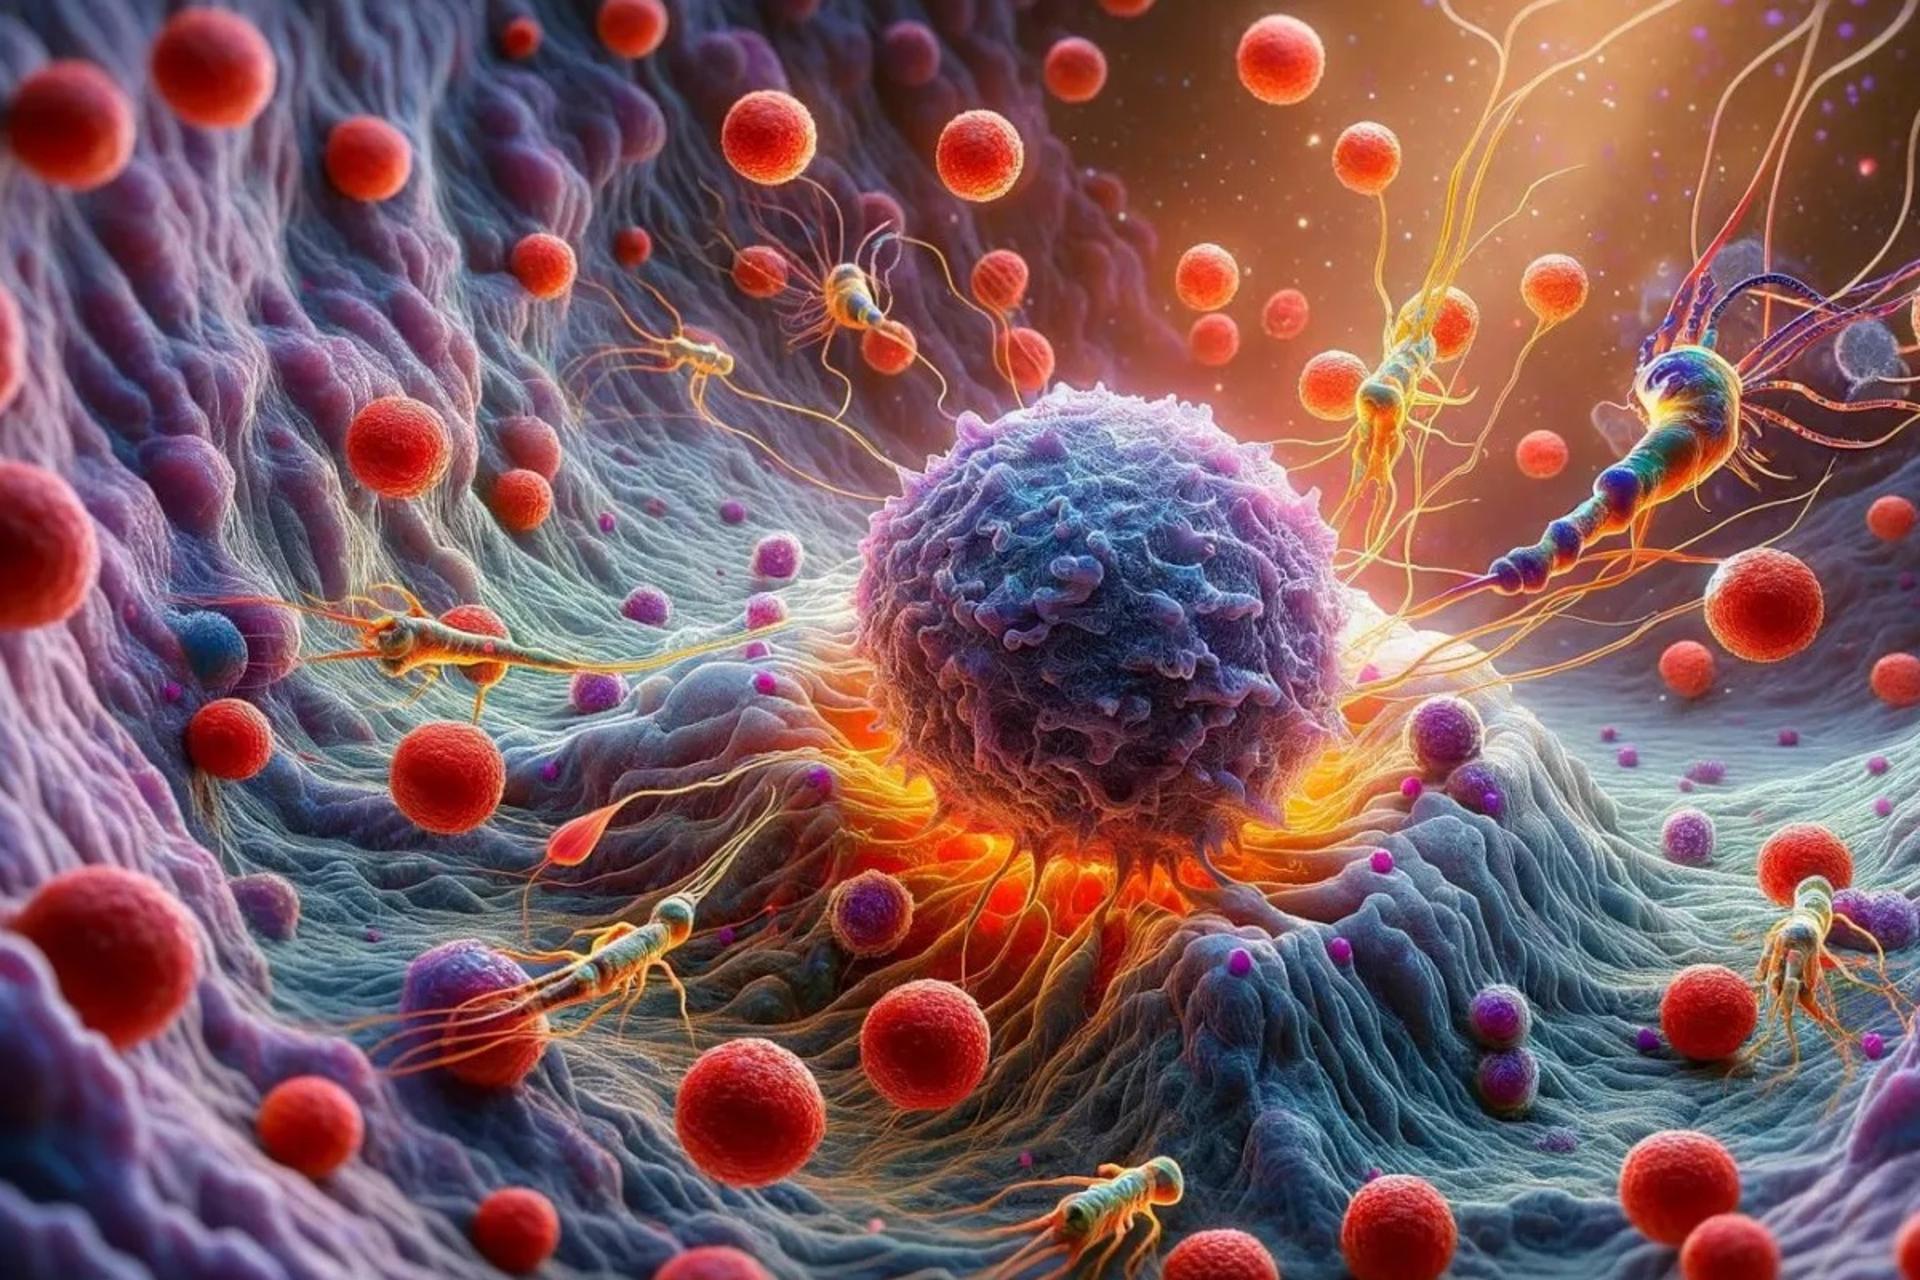 مرجع متخصصين ايران تصوير كامپيوتري از يك سلول سرطاني